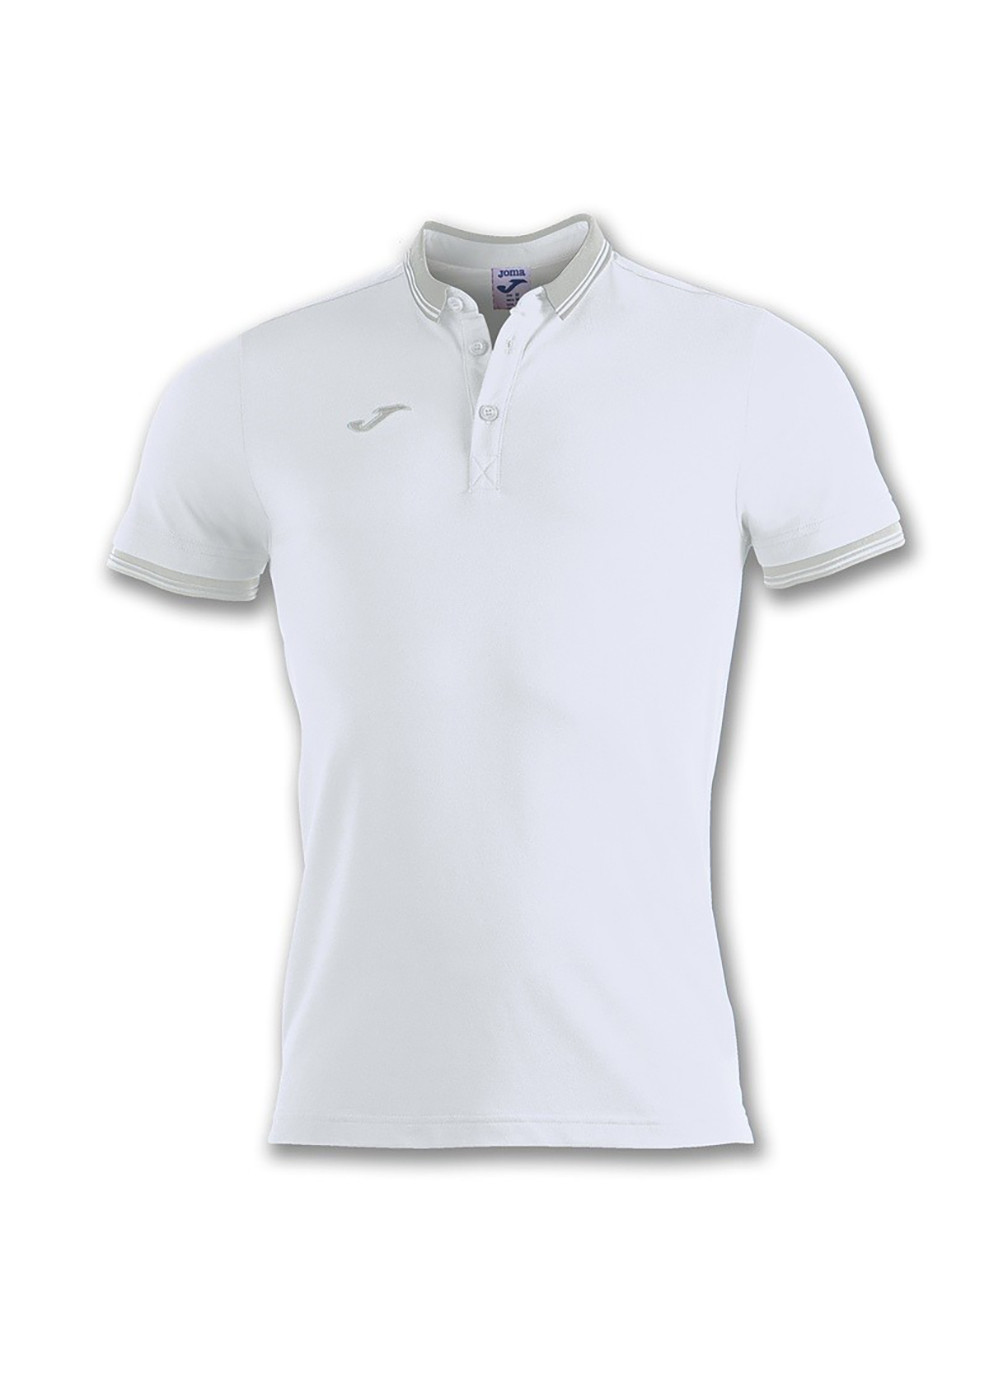 Белая футболка-поло poo shirt bali ii white s/s белый для мужчин Joma